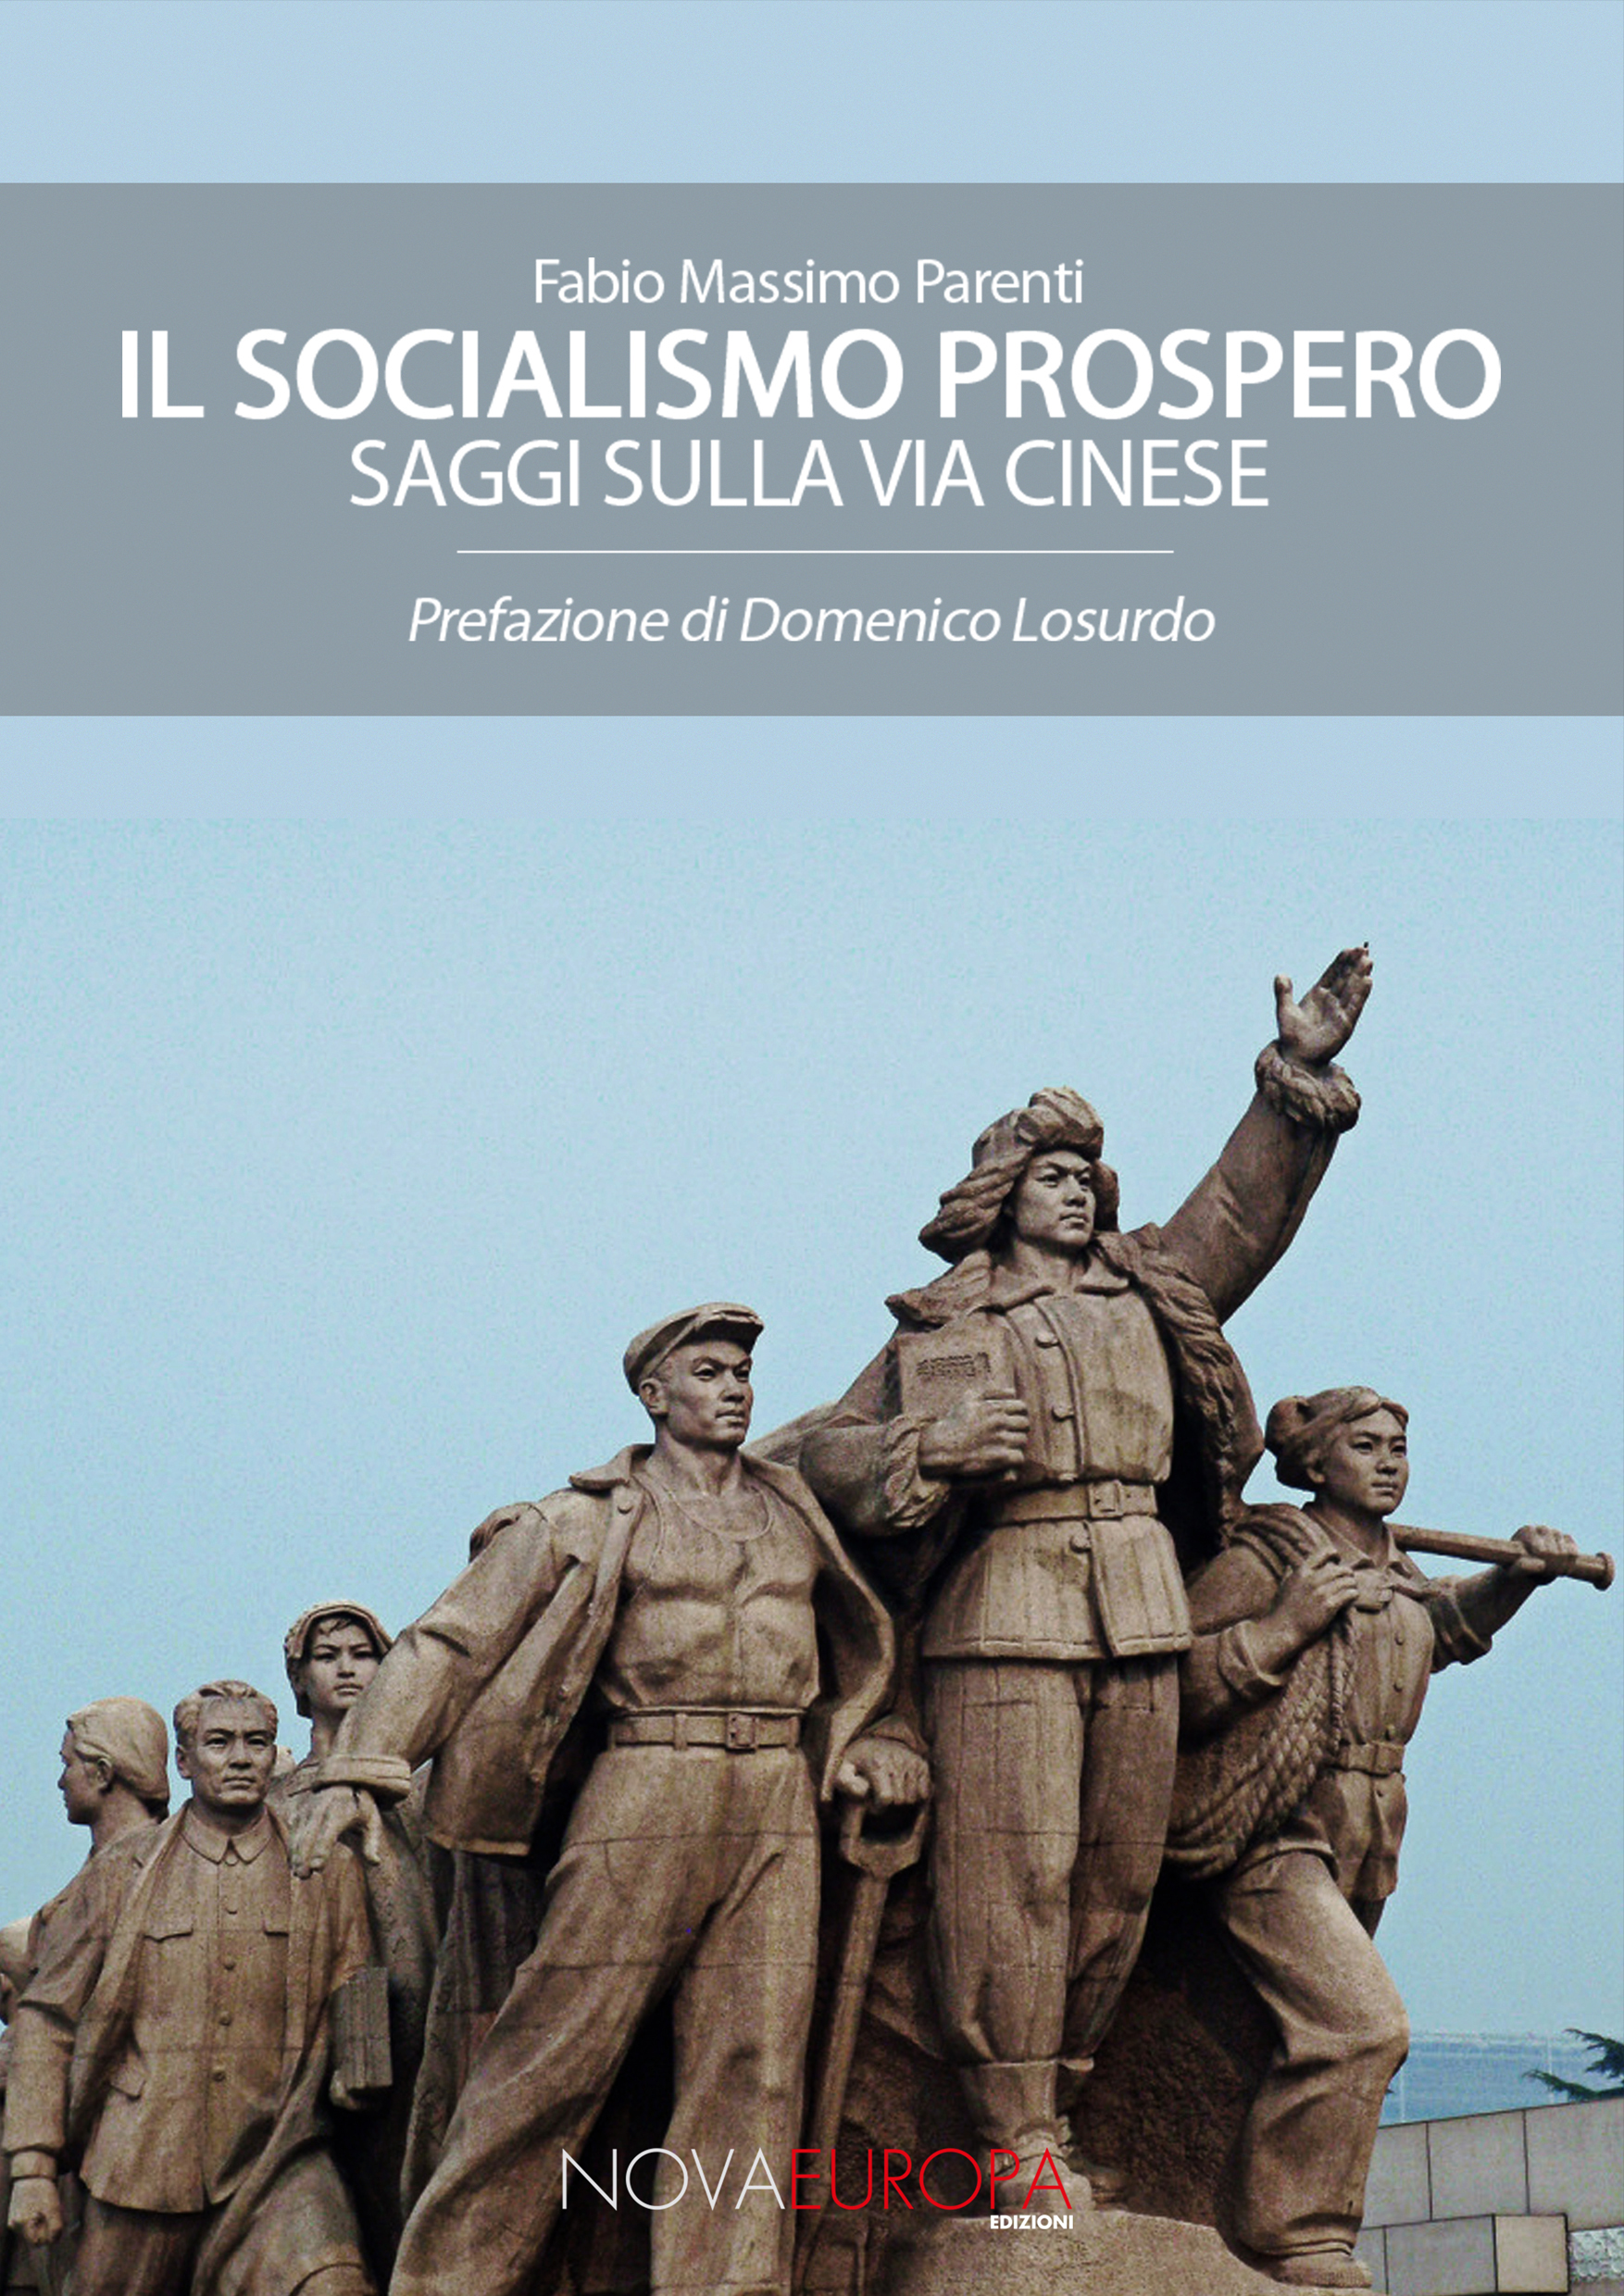 Fabio Massimo Parenti - "Il socialismo prospero. Saggi sulla via cinese" (Edizioni NovaEuropa)